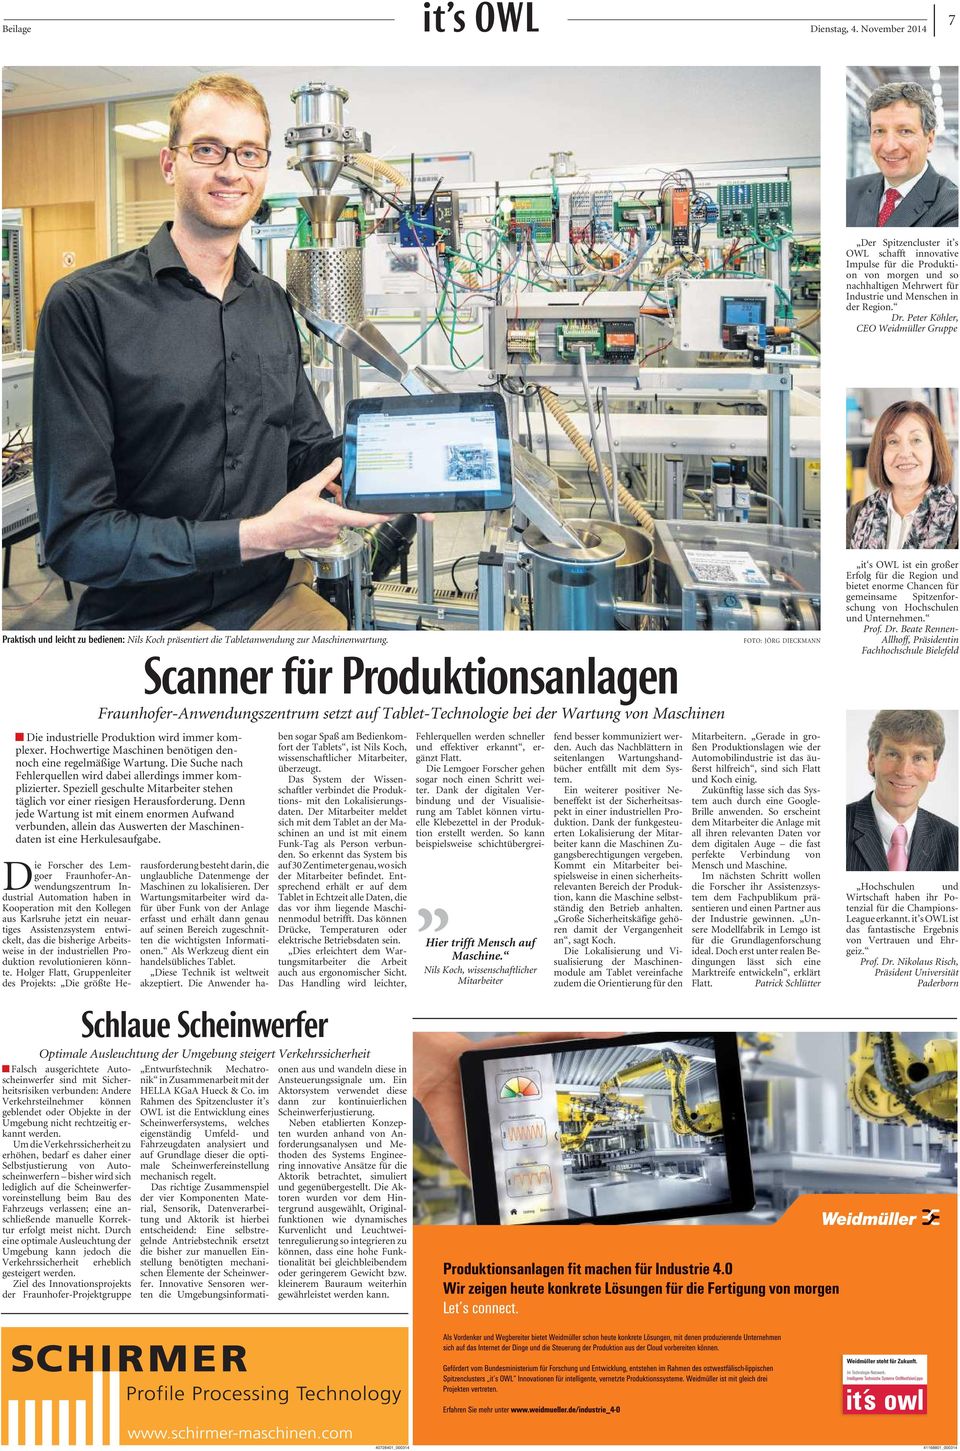 Fraunhofer-Anwendungszentrum setzt auf Tablet-Technologie bei der Wartung von Maschinen Die industrielle Produktion wird immer komplexer.